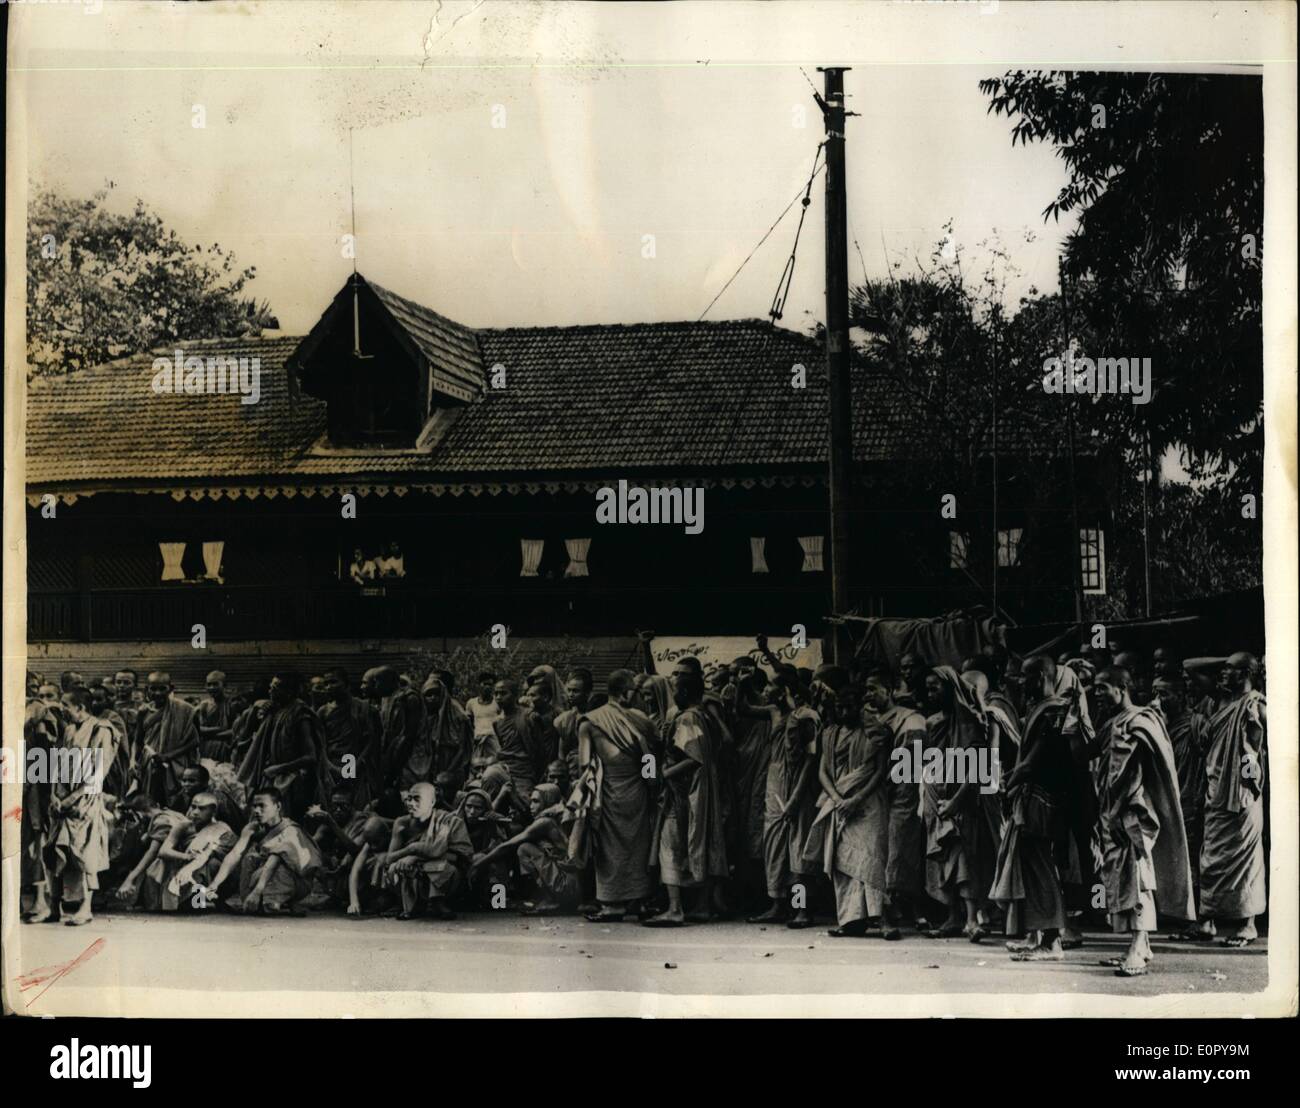 05 maggio 1957 - I monaci che stanno facendo lo sciopero della fame: per chiedere il rilascio di 50 buddisti che sono stati incarcerati a causa della loro boicottando il governo esame religiosa, alcuni 200 clamorosa monaci sono visto l'allestimento di un sit-in di sciopero nella parte anteriore del Rangoon prigione centrale quando hanno imparato che i loro leader e gli altri avevano iniziato una veloce in carcere. Foto Stock